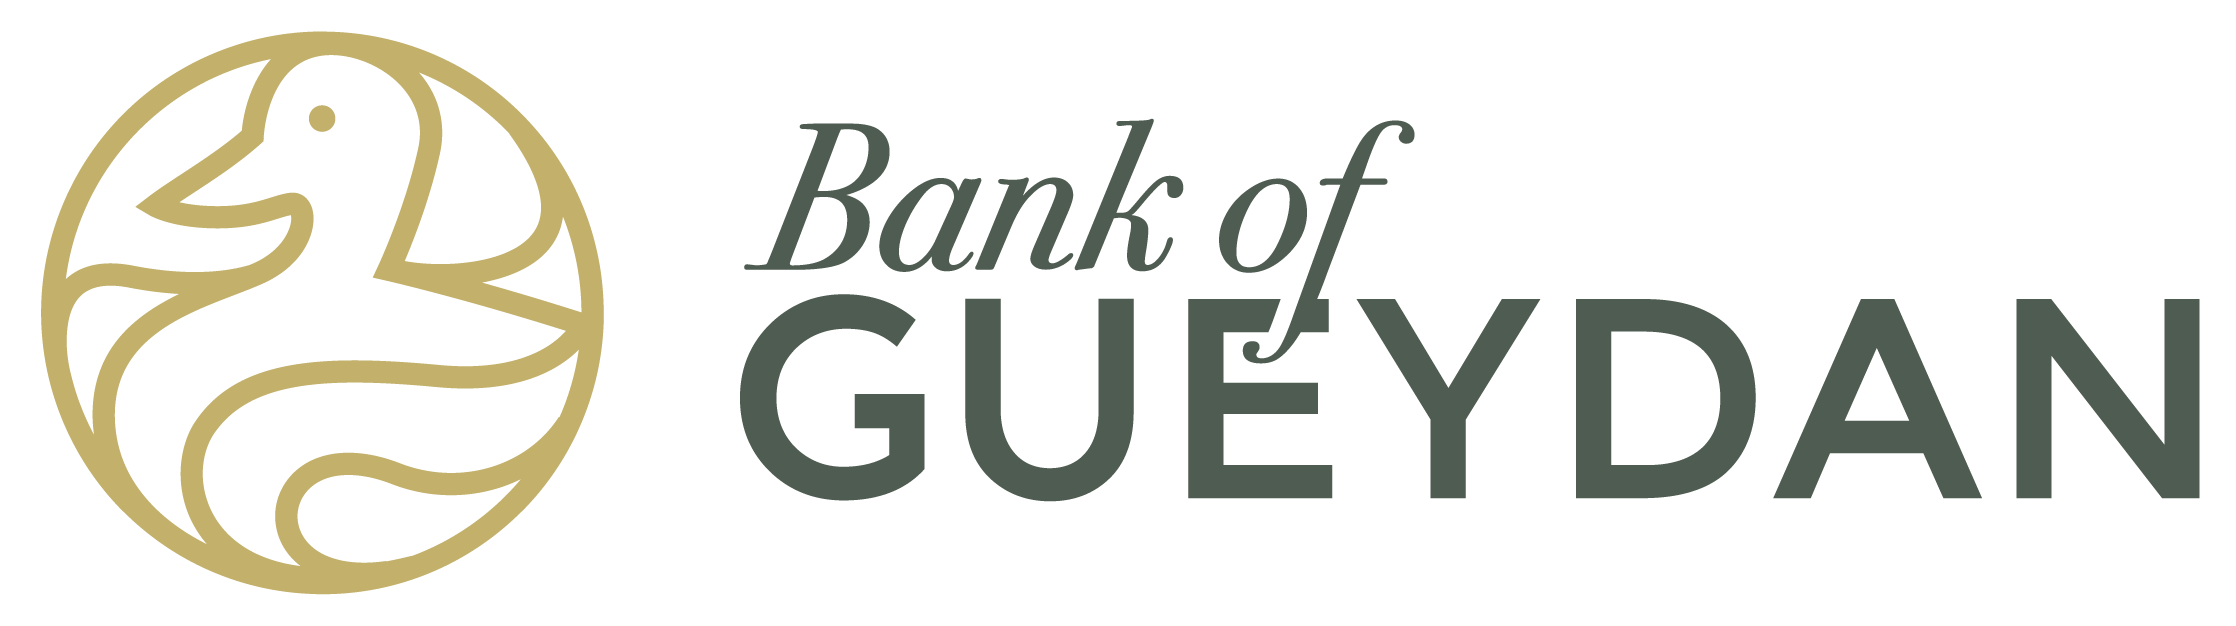 Bank of Gueydan